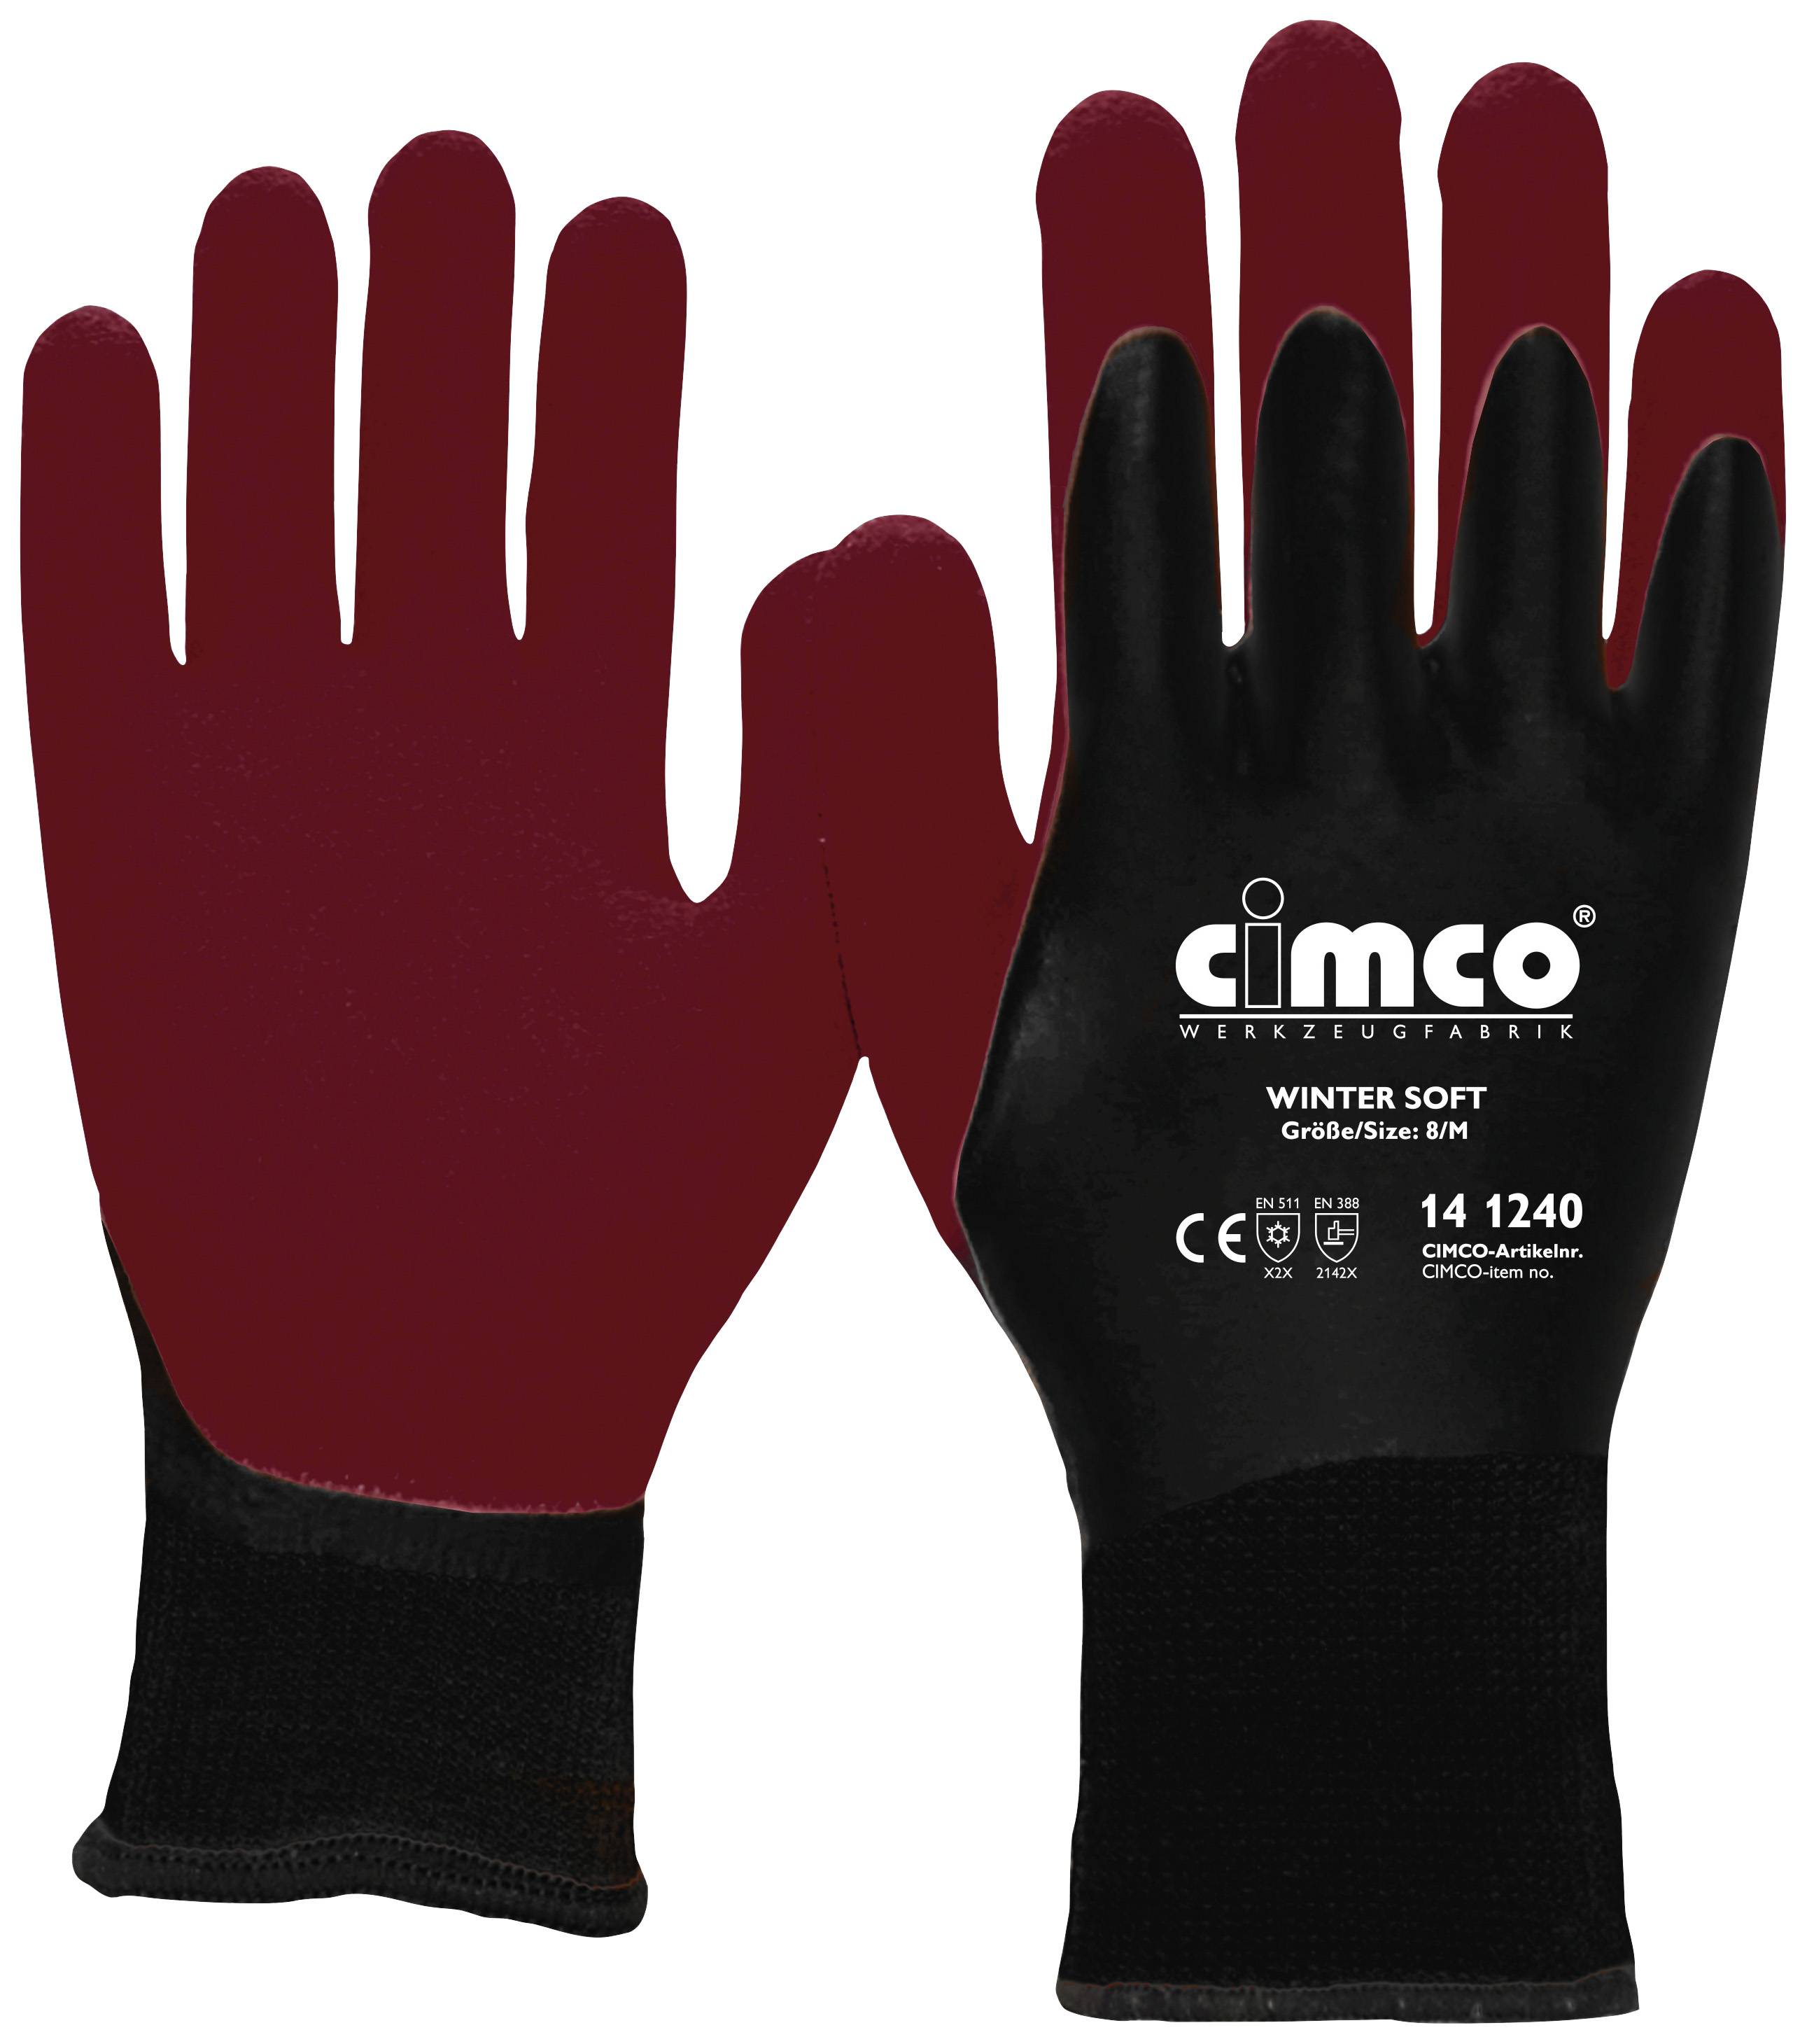 Cimco Winter Soft dunkelrot/schwarz 141243 Vinyl Arbeitshandschuh Größe (Handschuhe): 11, XXL EN 388